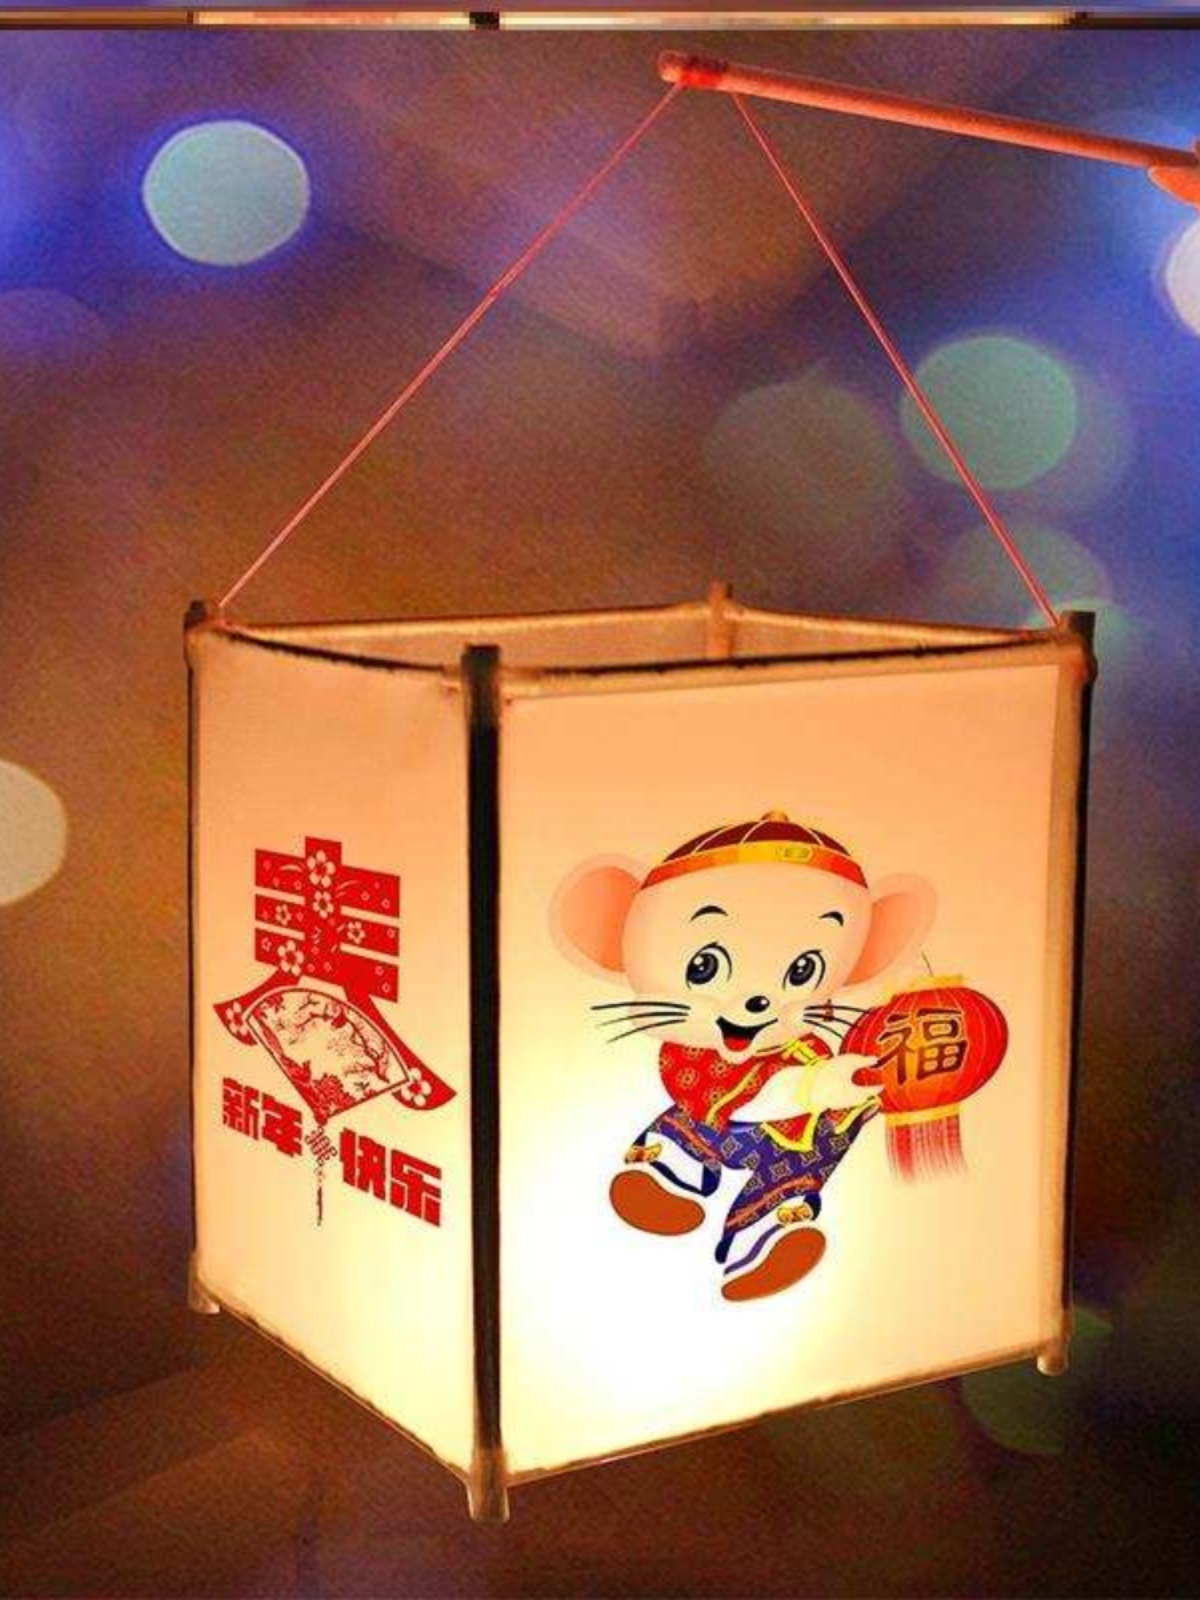 一次性筷子手工制作灯笼材料包自制做灯笼的手工材料纸简单年宵花